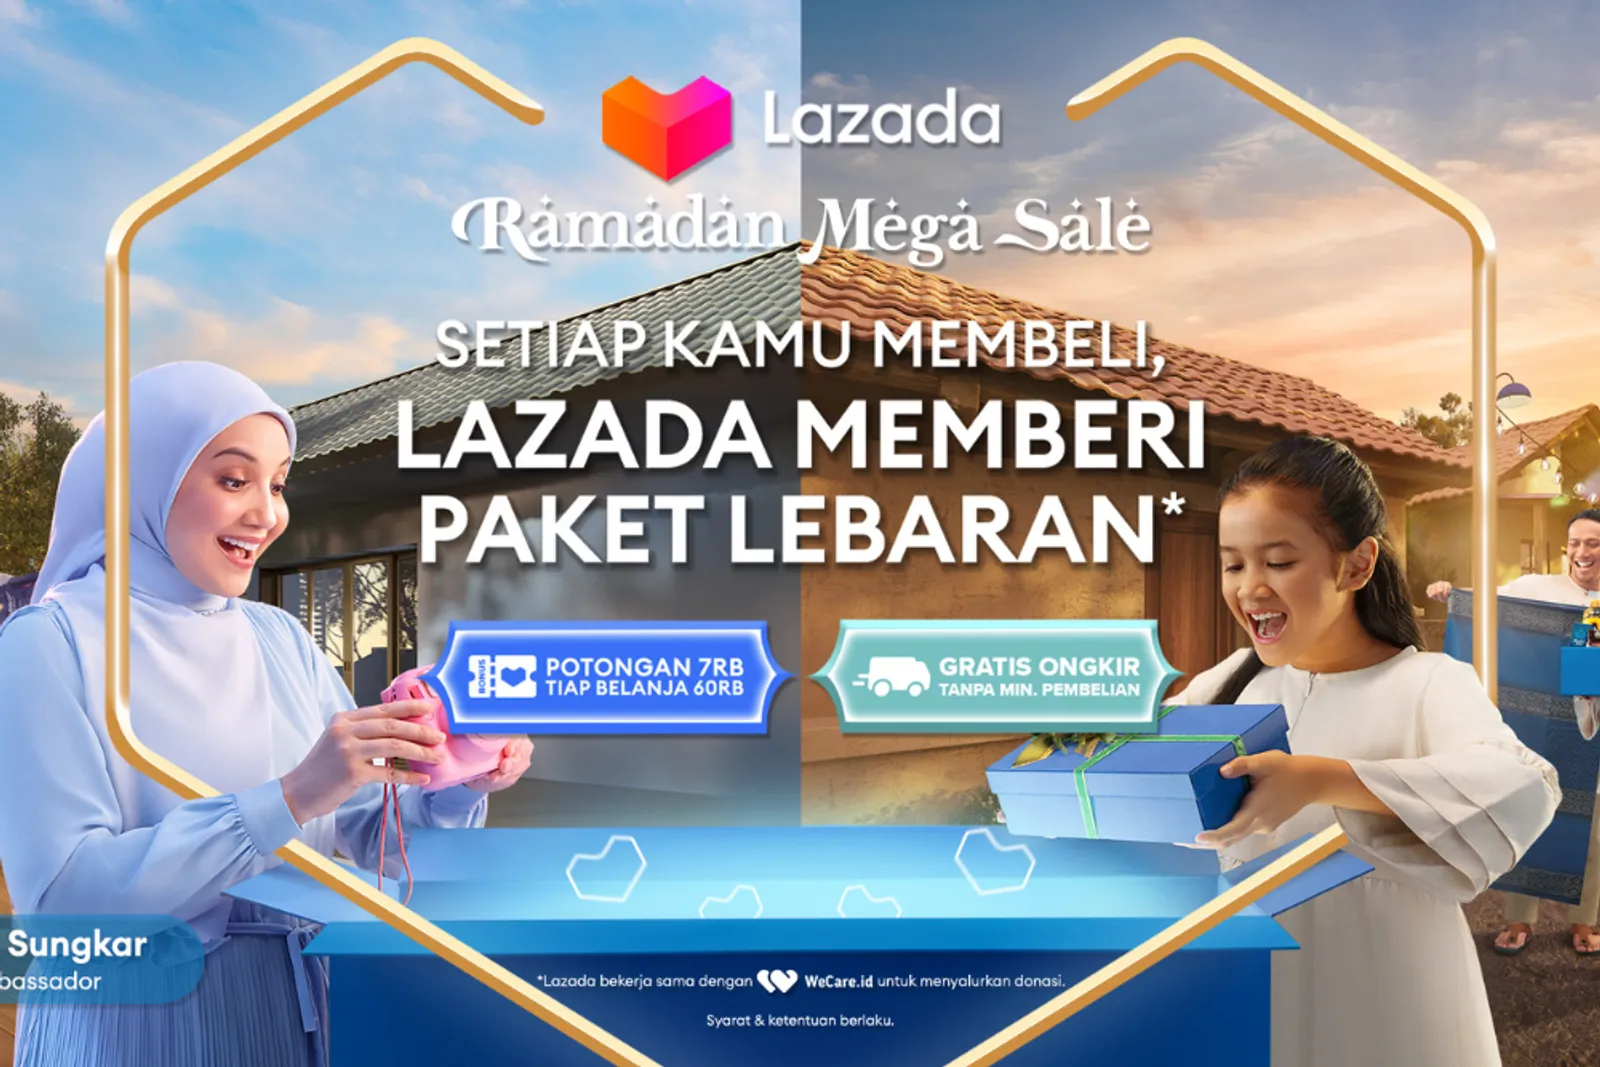 Belanja Sekarang! Lazada Sedang 'Membeli untuk Memberi' Paket Lebaran